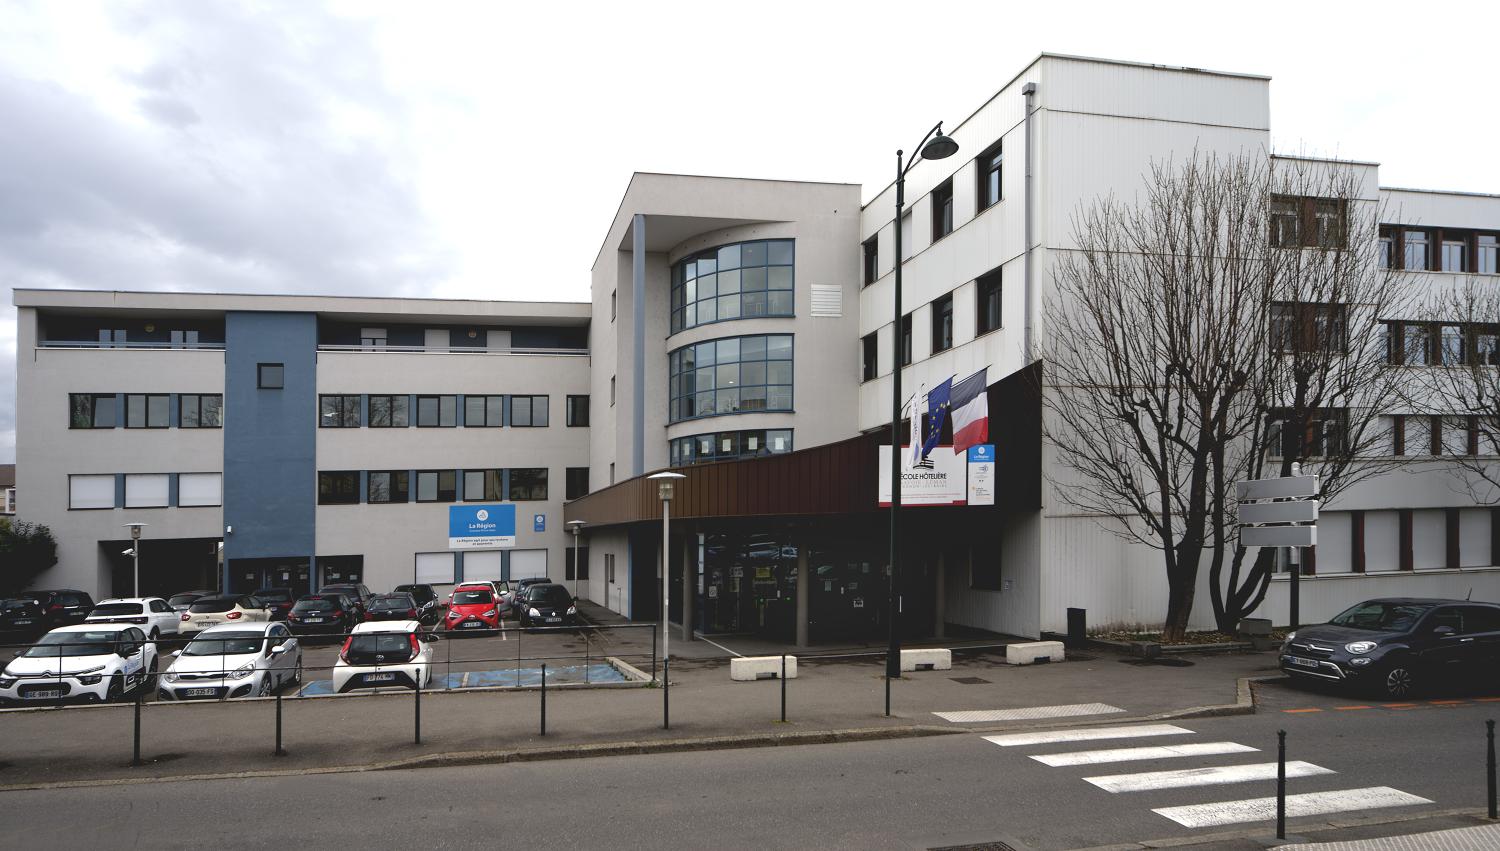 Cité technique hôtelière, actuellement lycée hôtelier dit école hôtelière Savoie-Léman